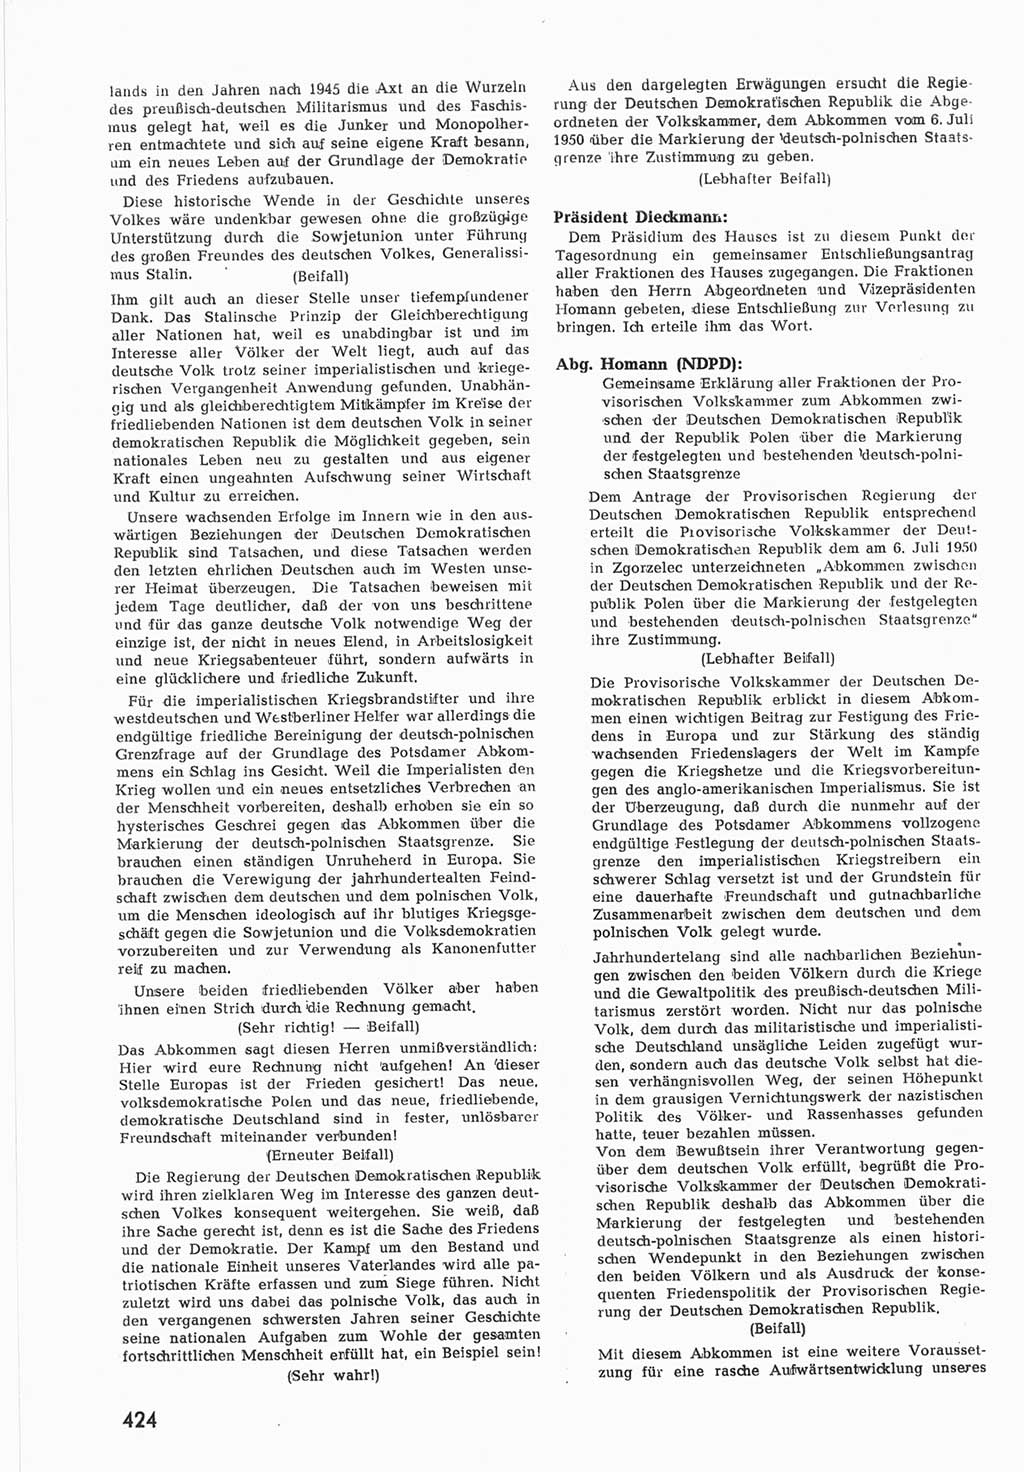 Provisorische Volkskammer (VK) der Deutschen Demokratischen Republik (DDR) 1949-1950, Dokument 442 (Prov. VK DDR 1949-1950, Dok. 442)